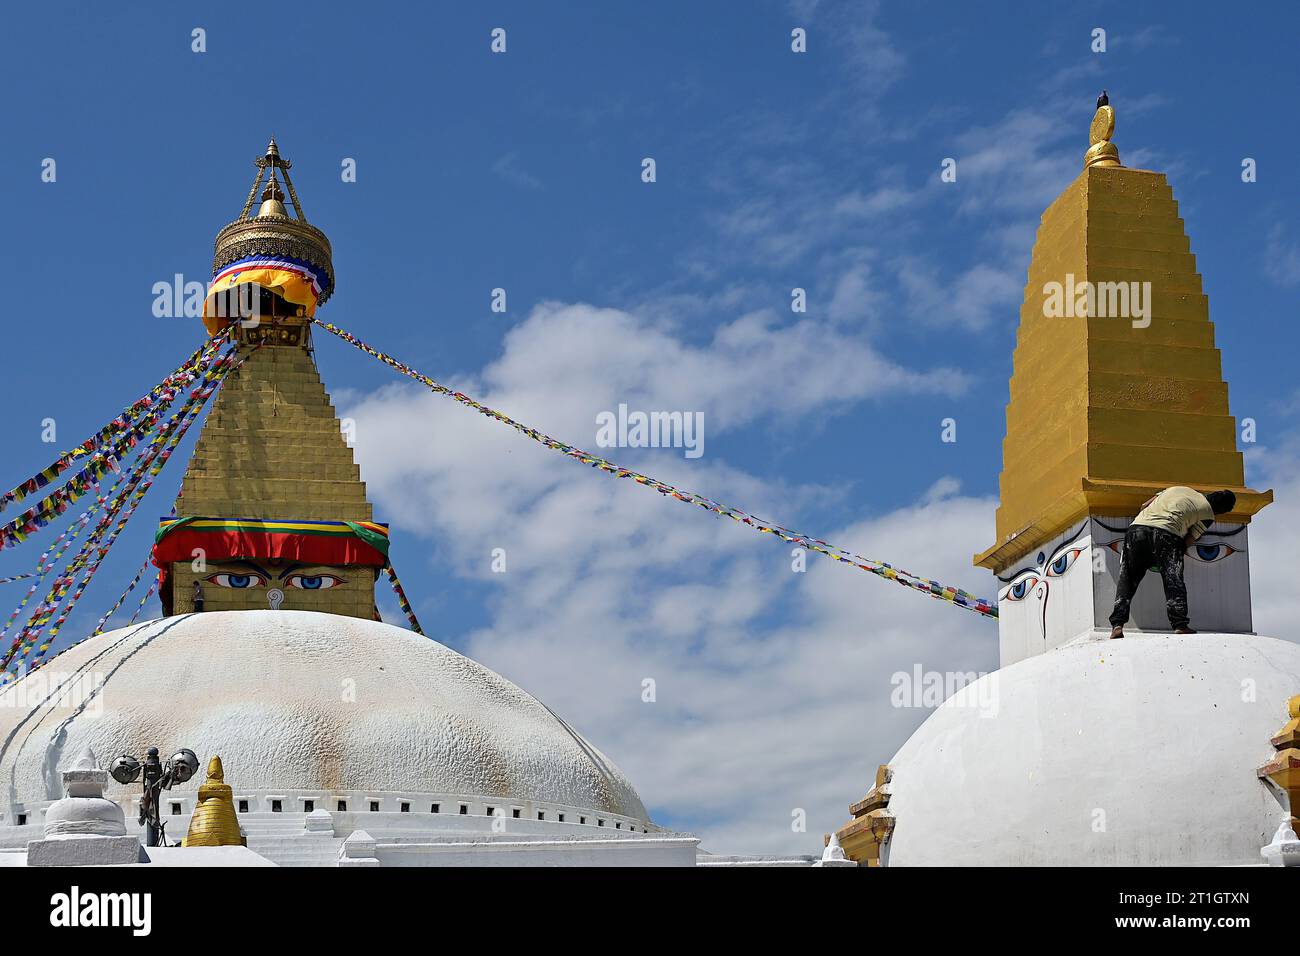 Malte alle sehenden Augen Buddhas, der die vier Himmelsrichtungen überwacht, während ein Arbeiter Farbe auf den Turm einer Stupa aufträgt, Boudhanath, Kathmandu, Nepal Stockfoto